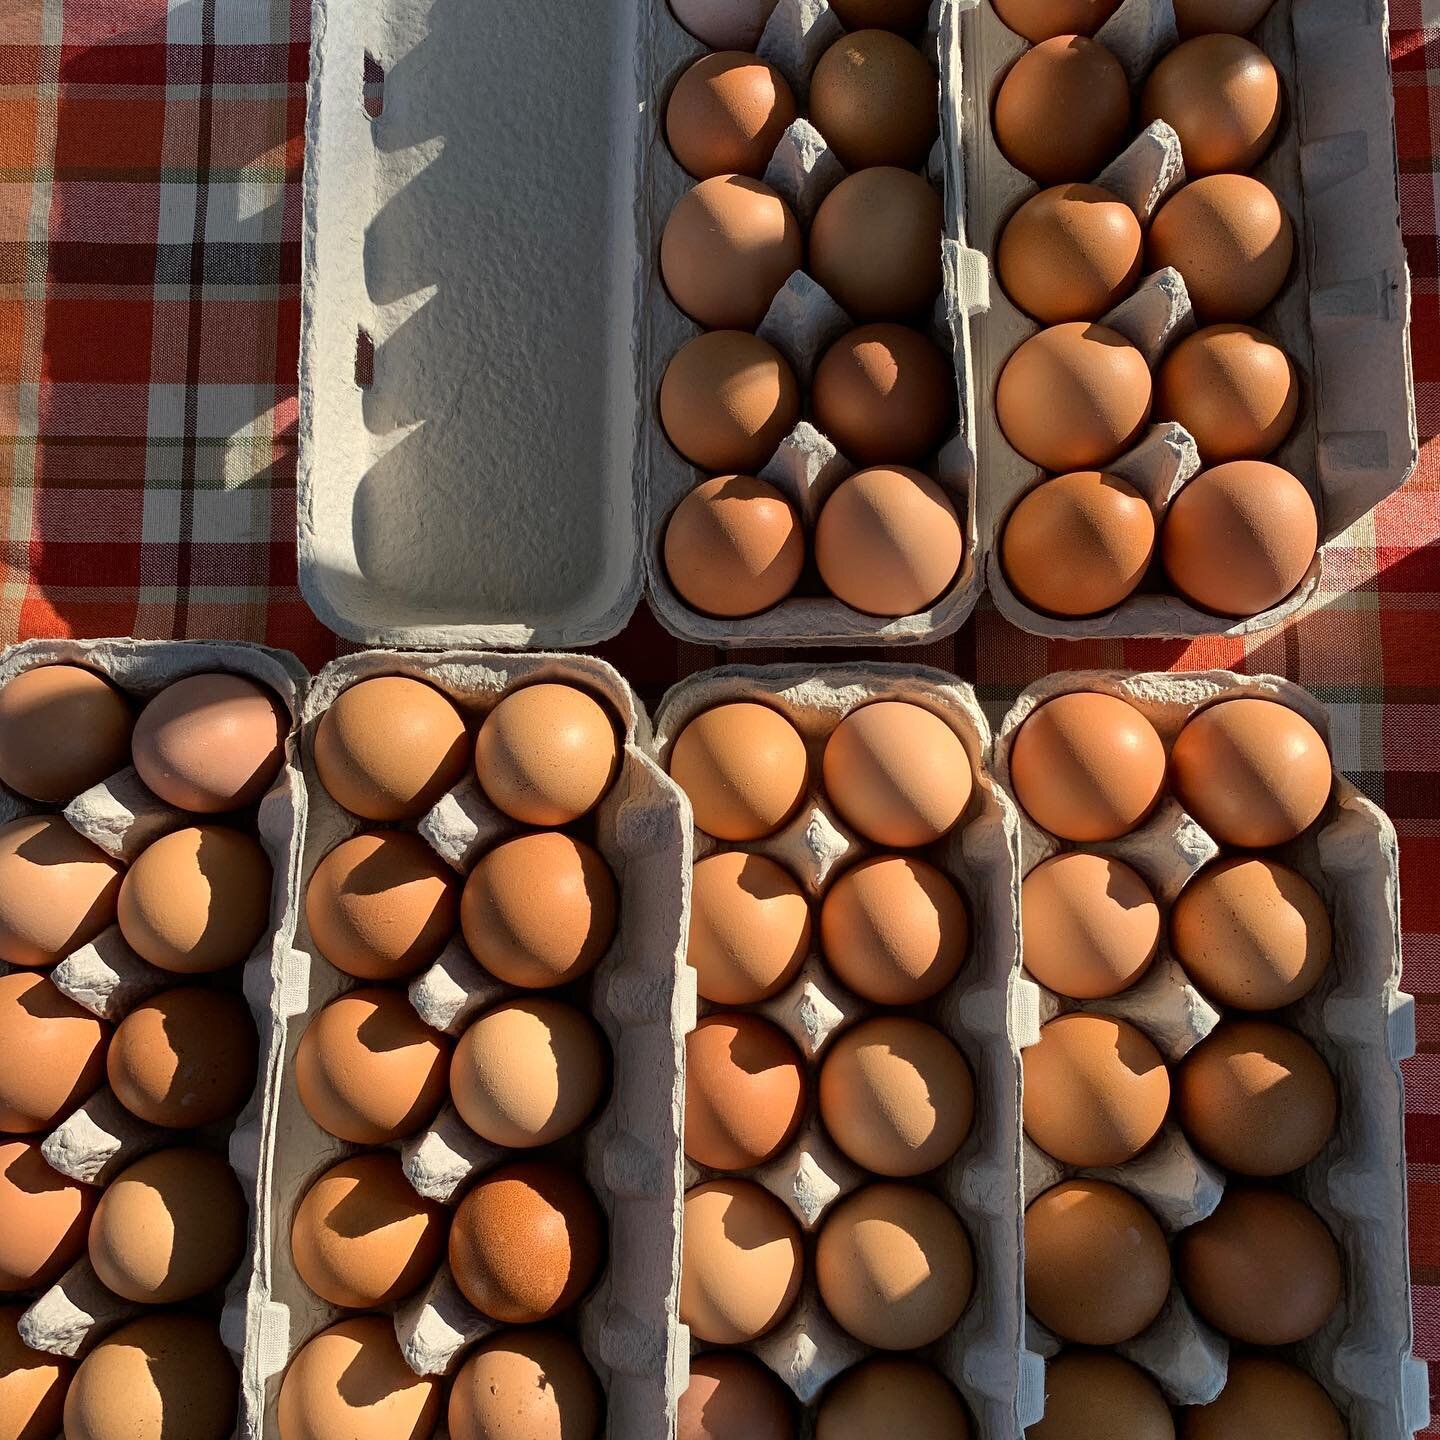 Fresh eggs from @urban.freshfarm 🥚